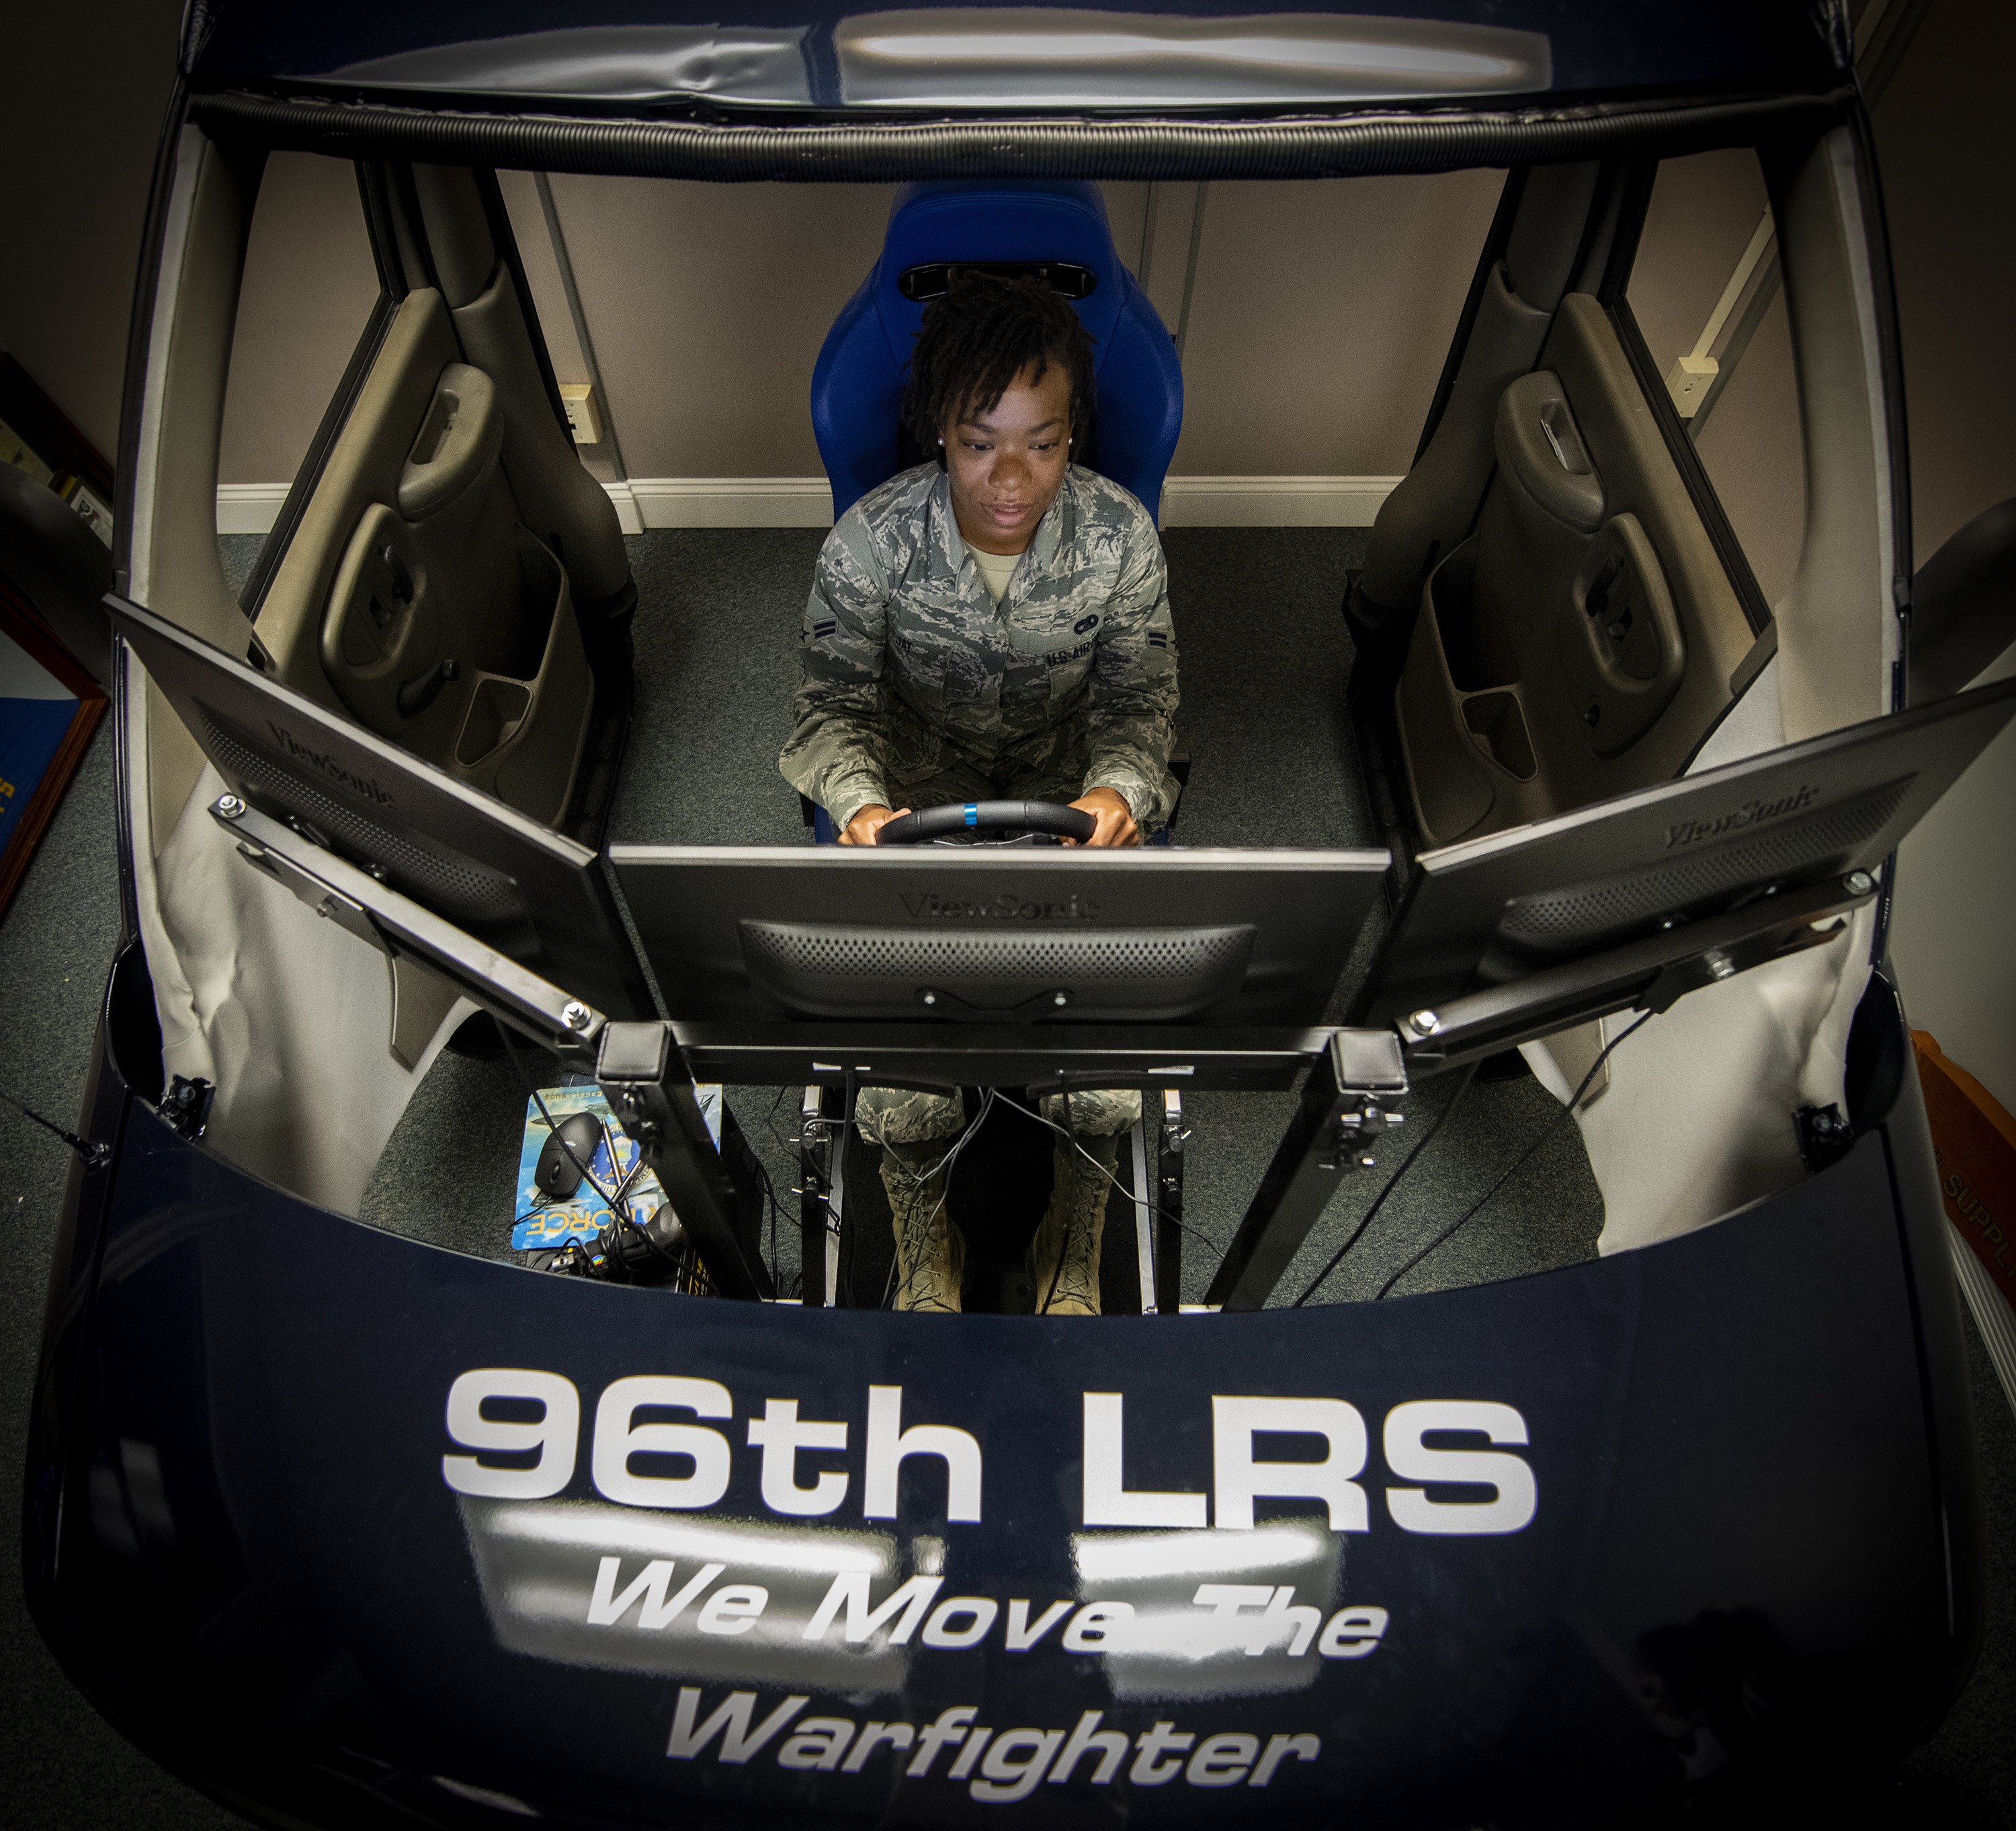 Vehicle Air Bag Simulator Trainer - NiYo